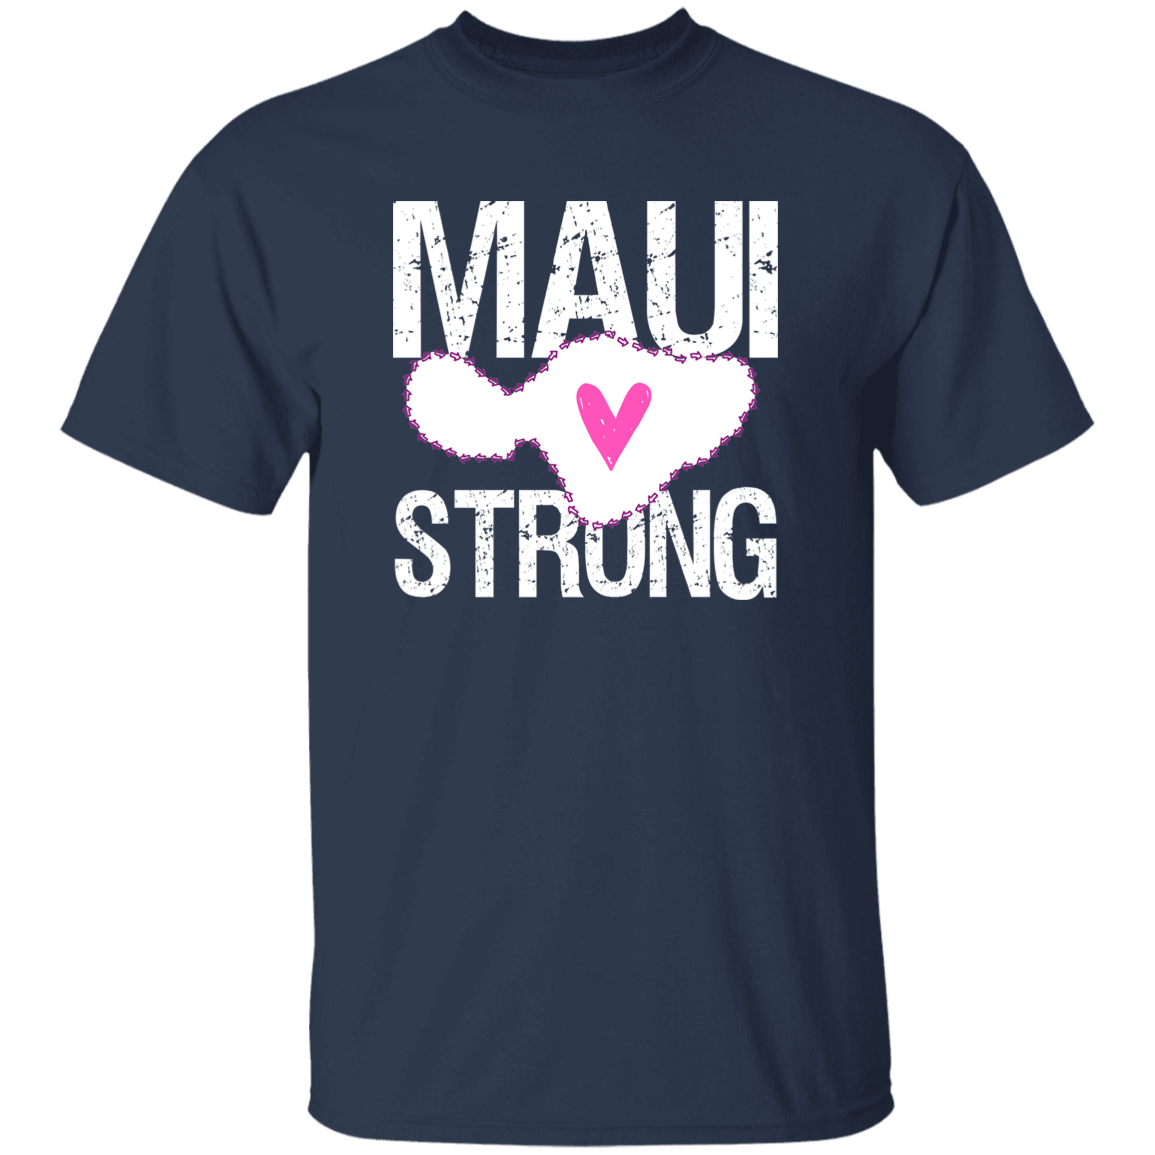 Maui Strong T-Shirt